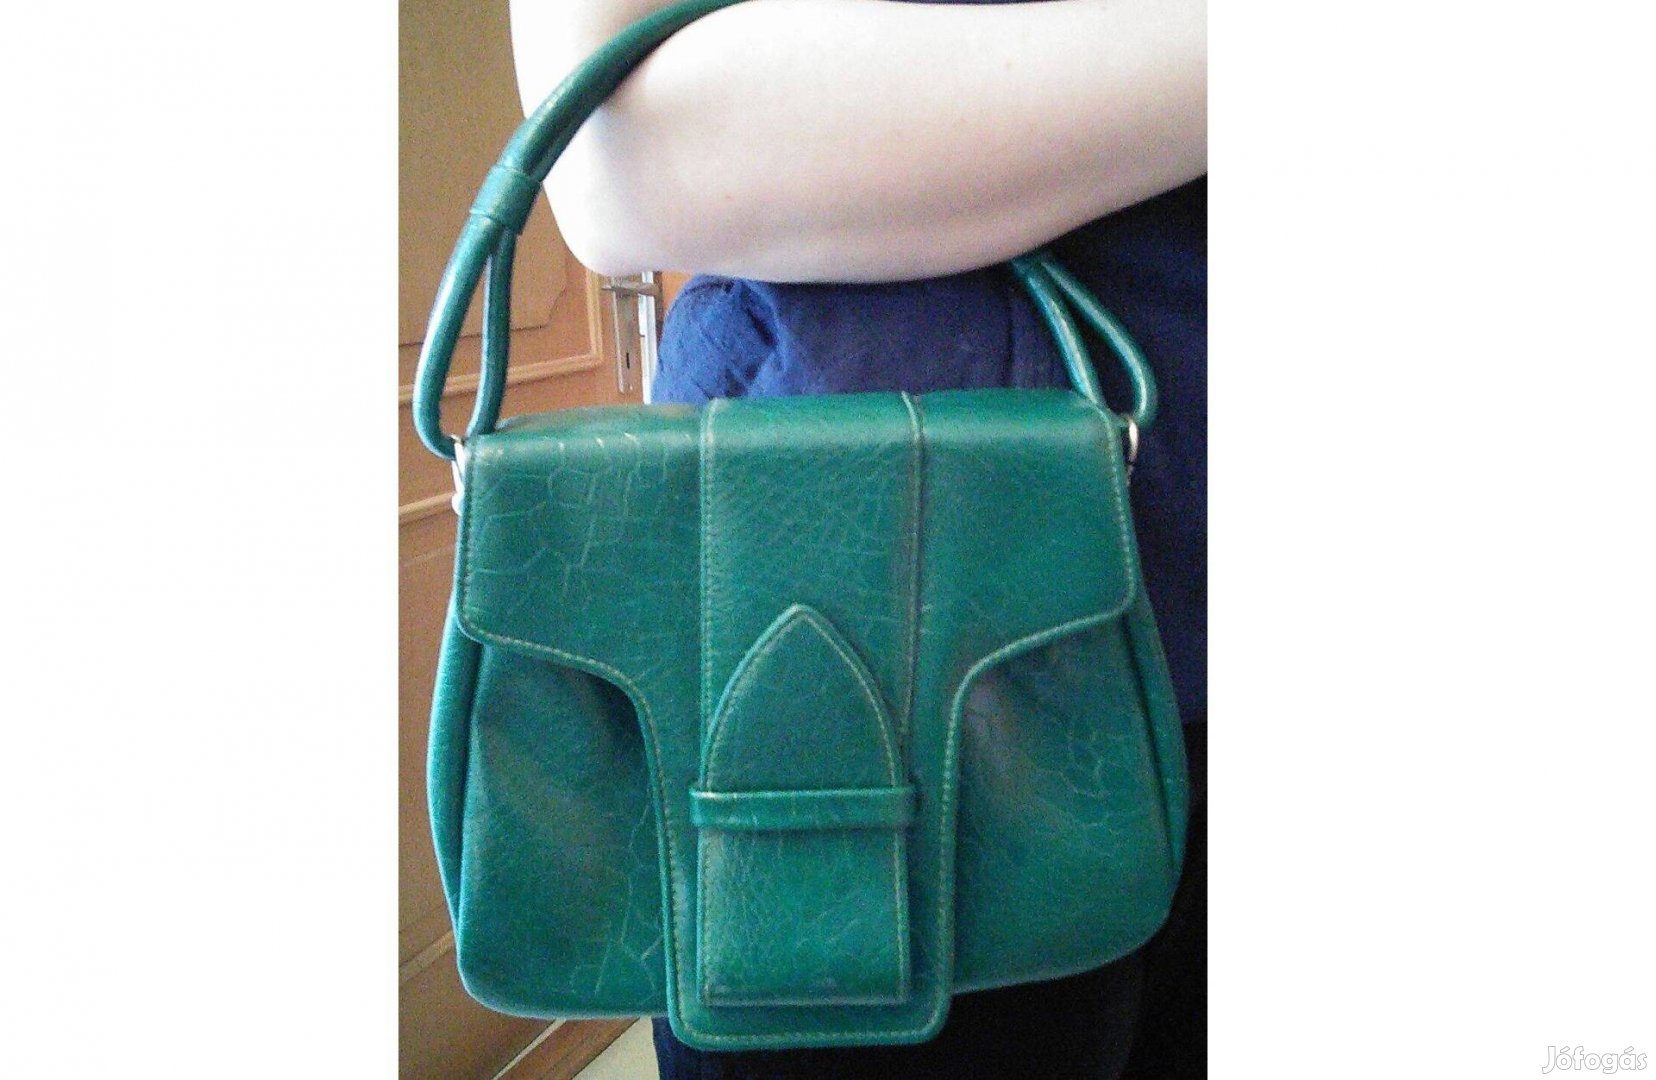 24 cm x 22 cm x 8 cm zöld női ridikül táska retikül műbőr